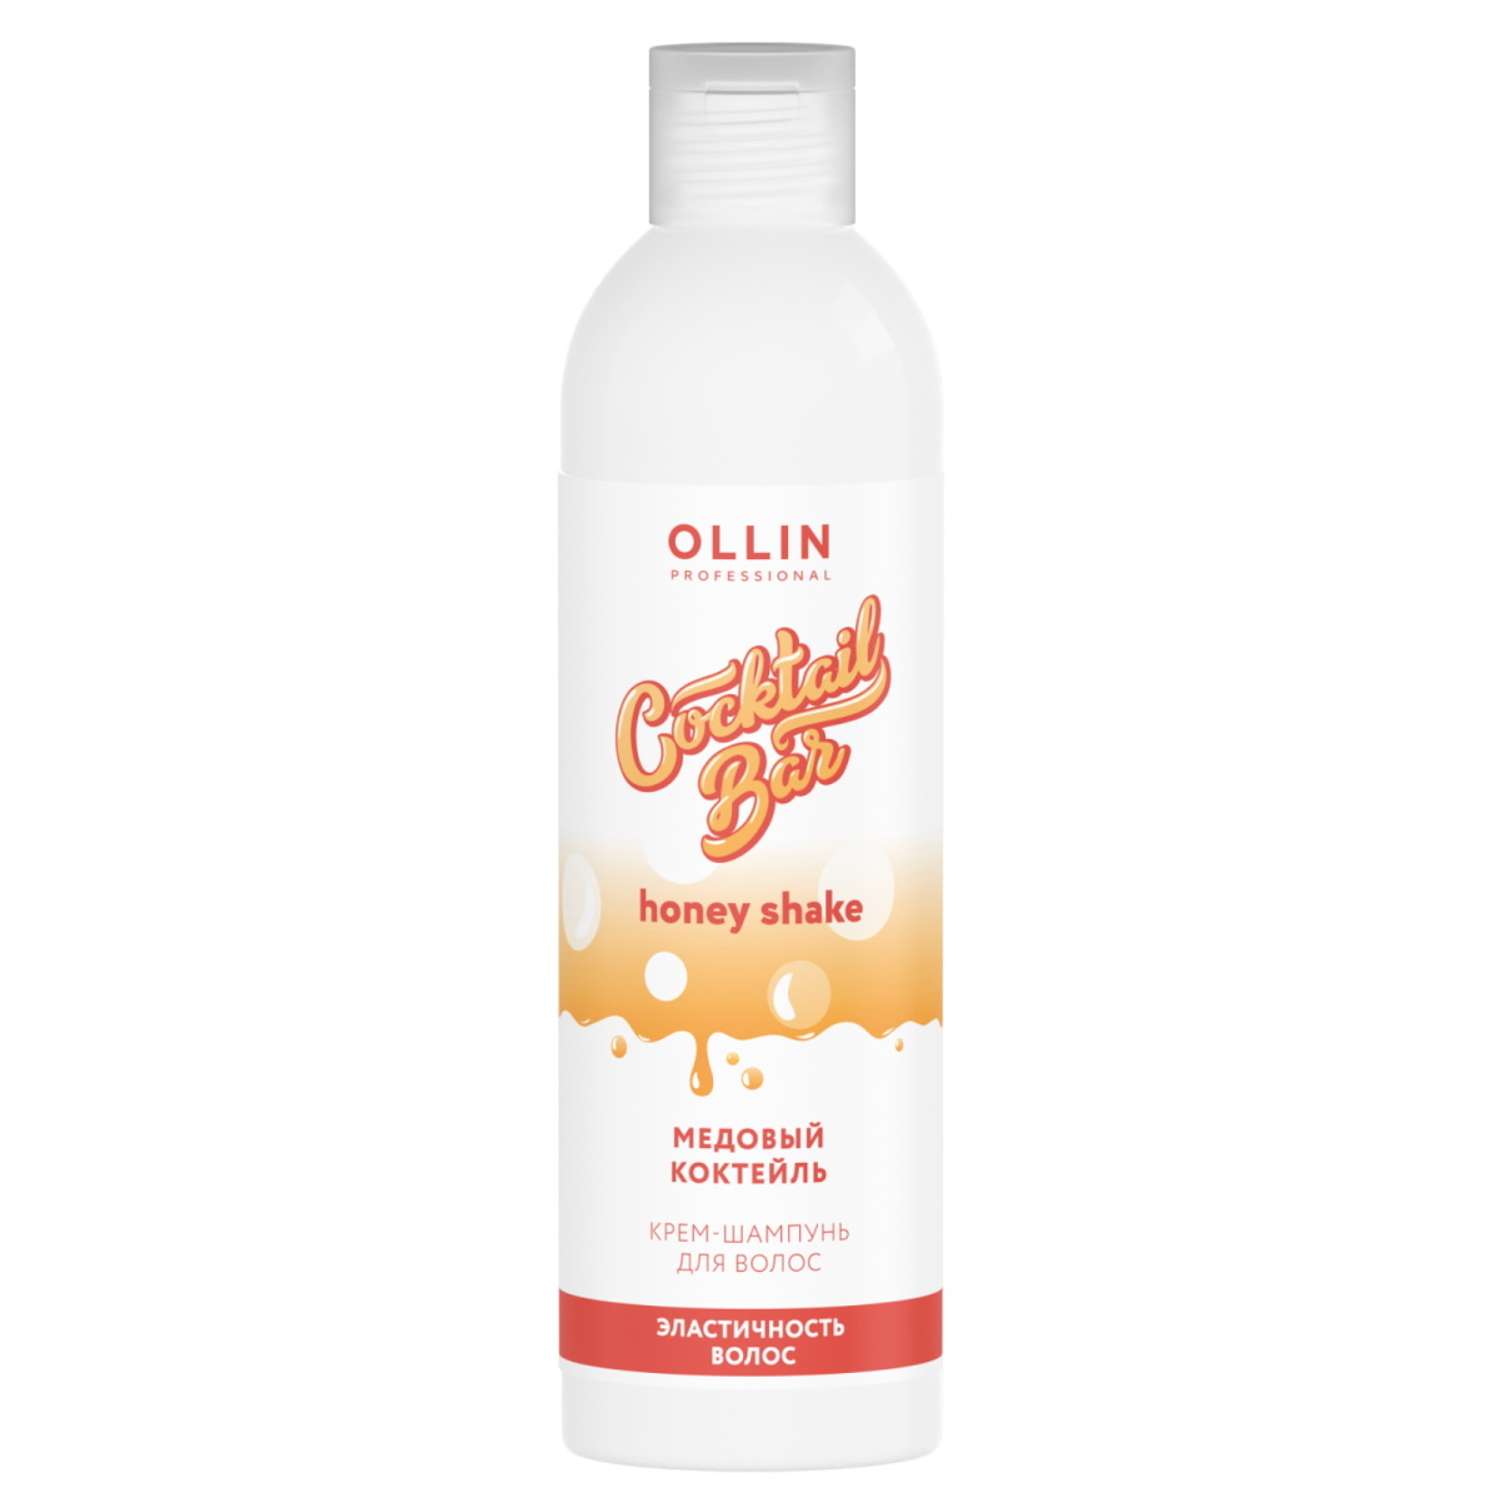 Крем-шампунь Ollin COCKTAIL BAR для эластичности волос медовый коктейль 400 мл - фото 1